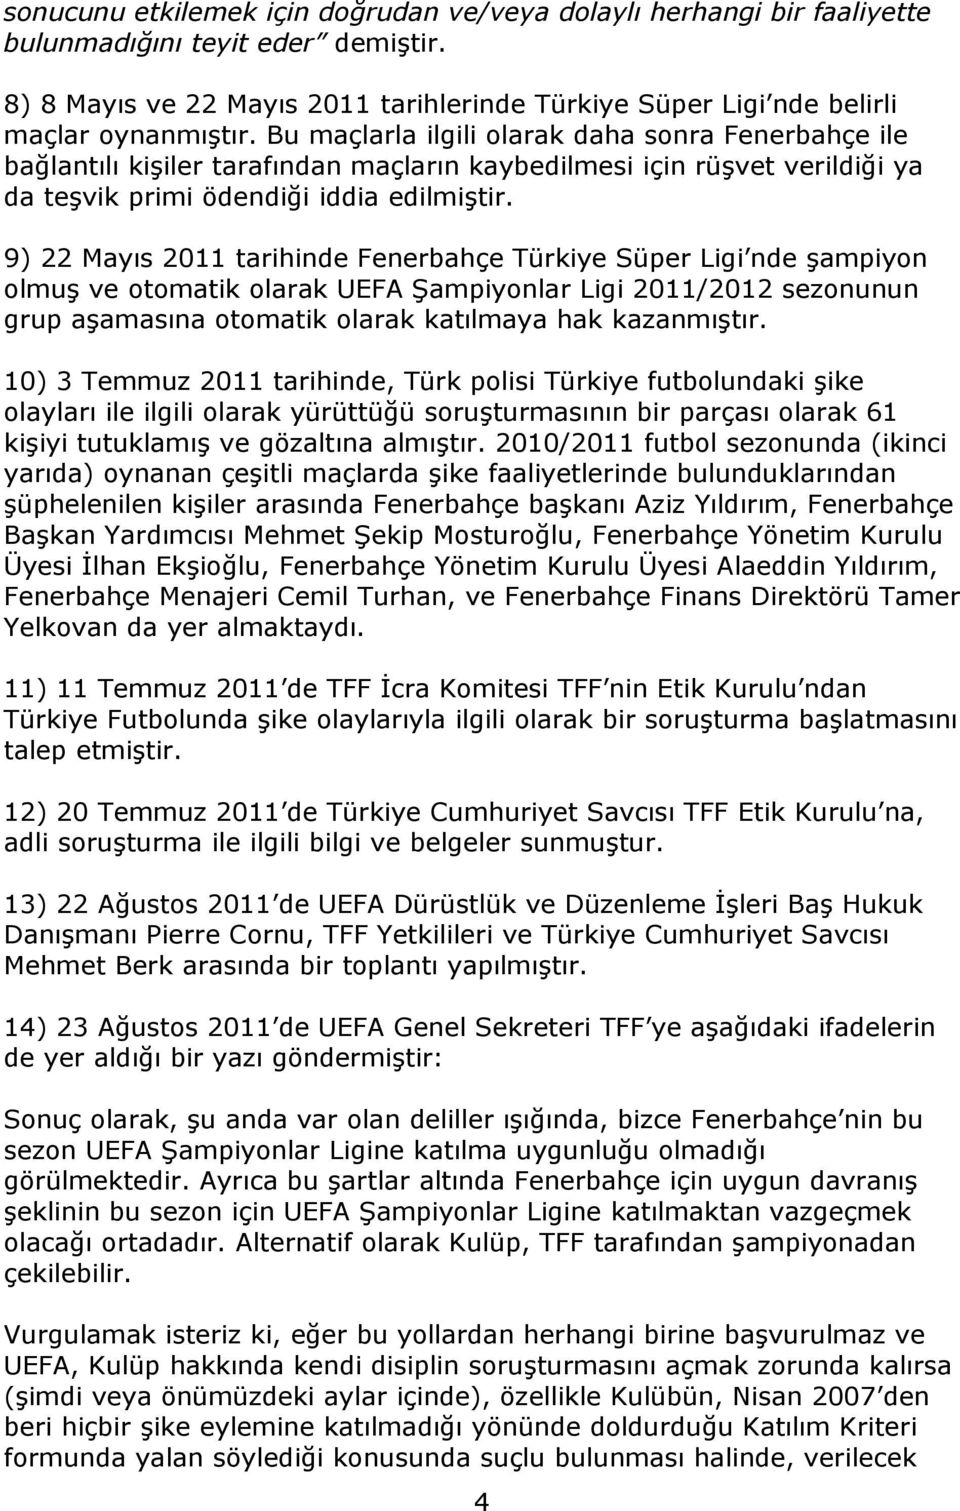 9) 22 Mayıs 2011 tarihinde Fenerbahçe Türkiye Süper Ligi nde şampiyon olmuş ve otomatik olarak UEFA Şampiyonlar Ligi 2011/2012 sezonunun grup aşamasına otomatik olarak katılmaya hak kazanmıştır.